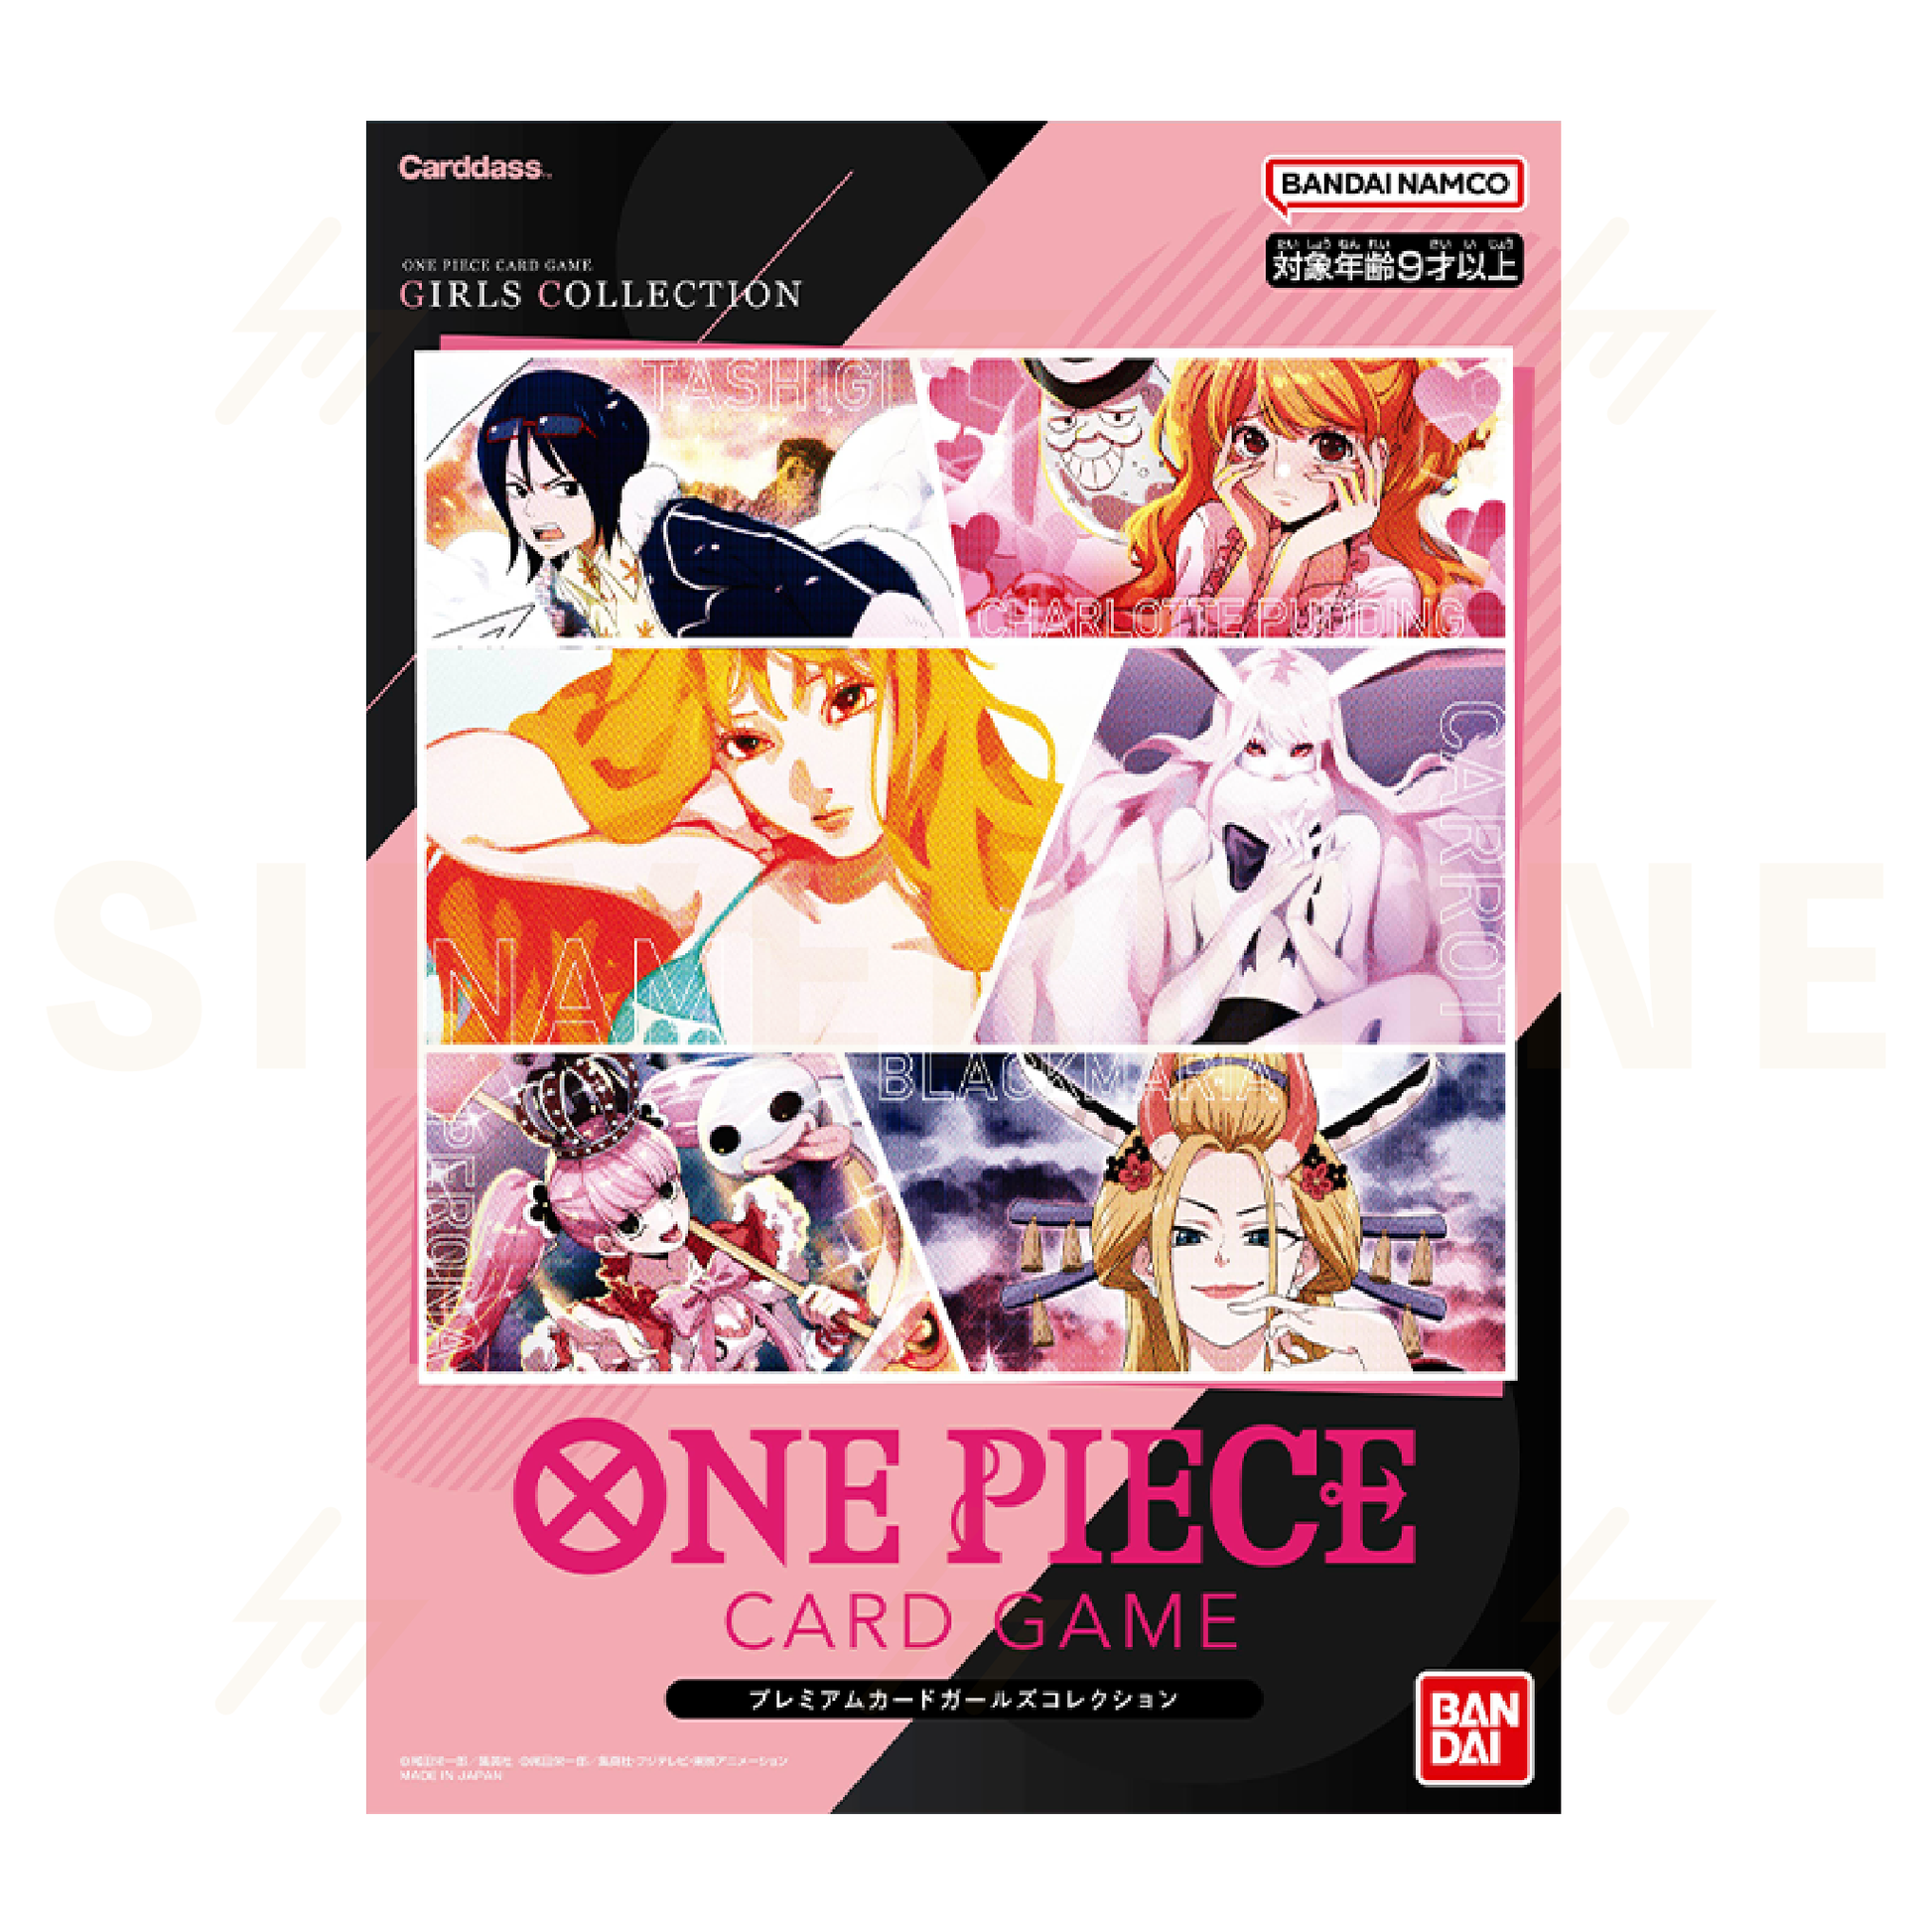 One Piece - Card Set - Girls Premium Collection – Silvermine